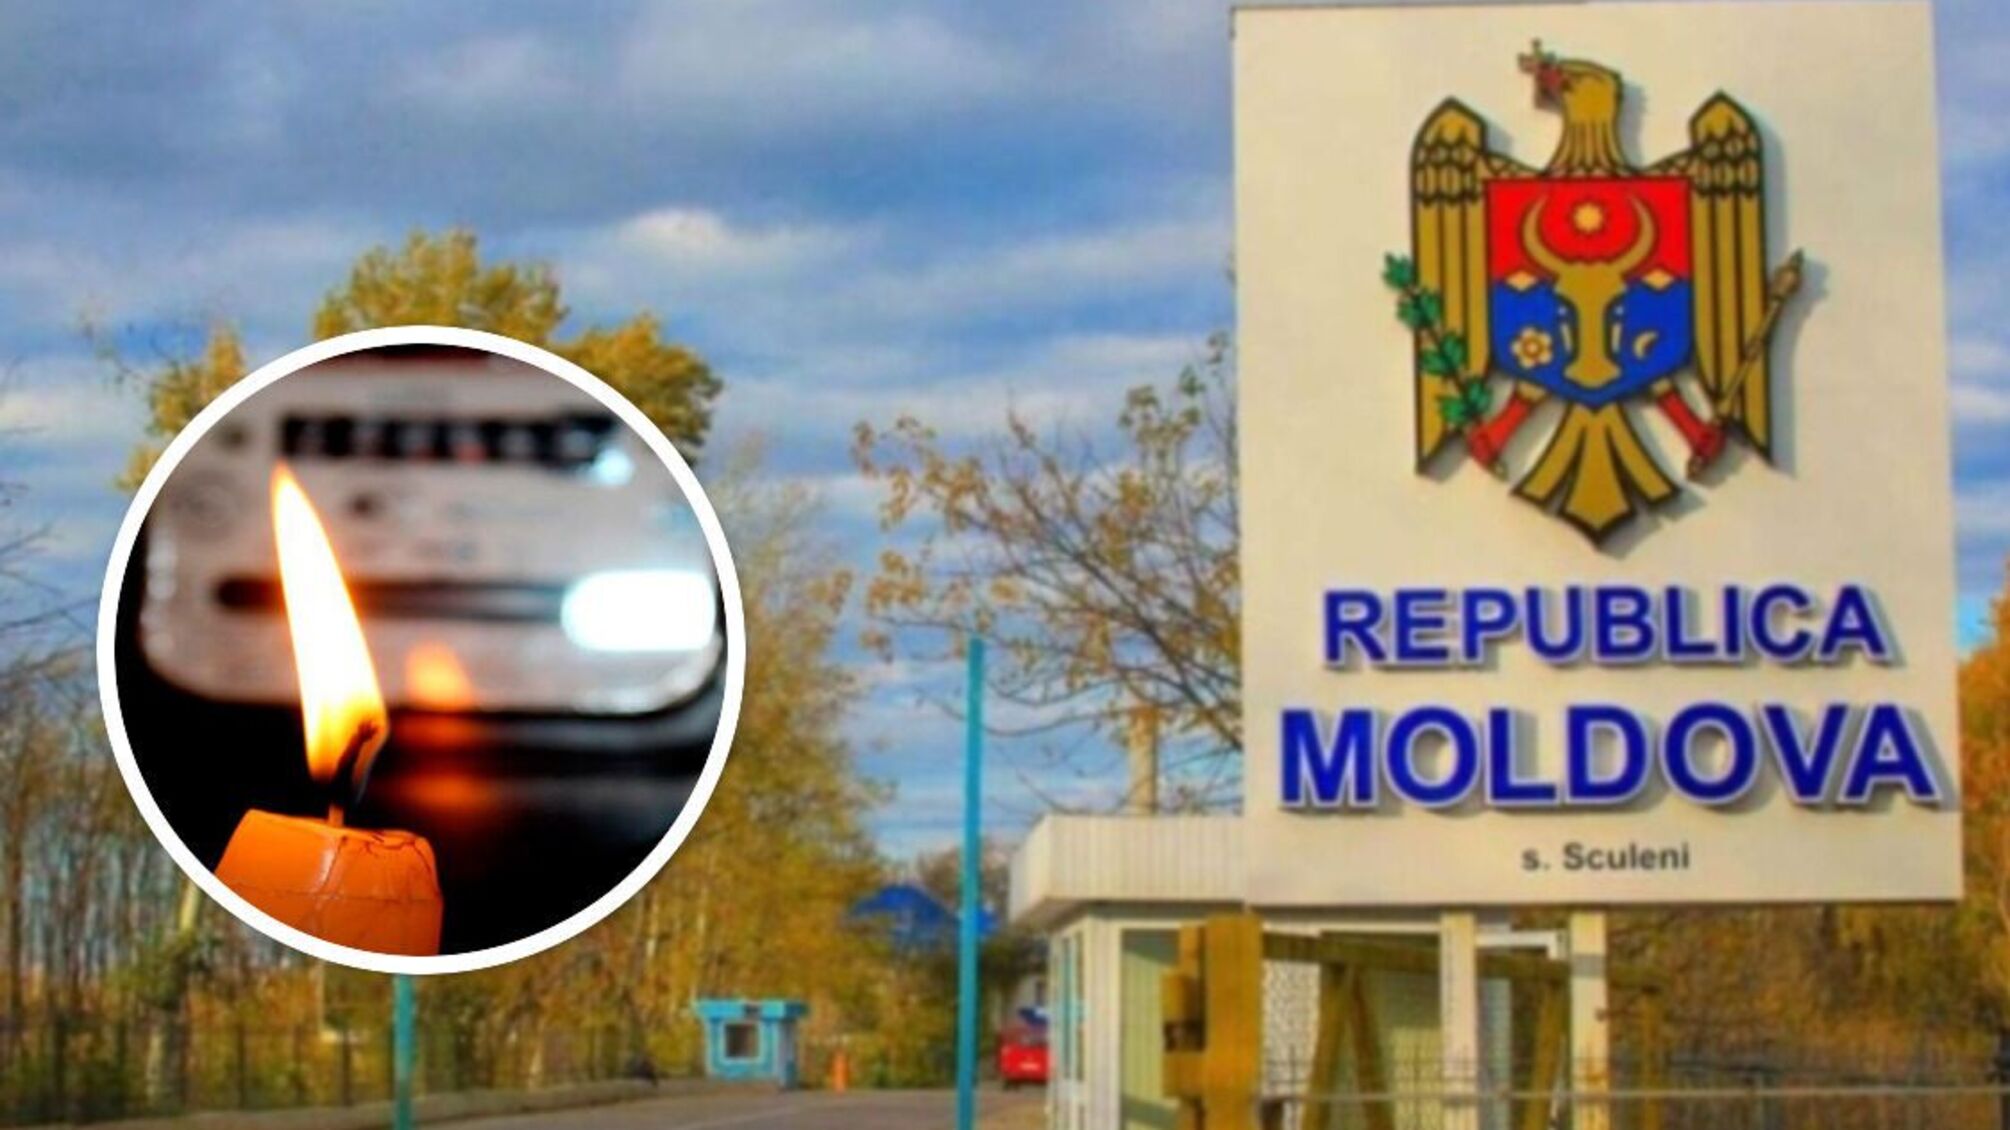 В Молдове перебои со светом, в Кишиневе остановились троллейбусы: что известно